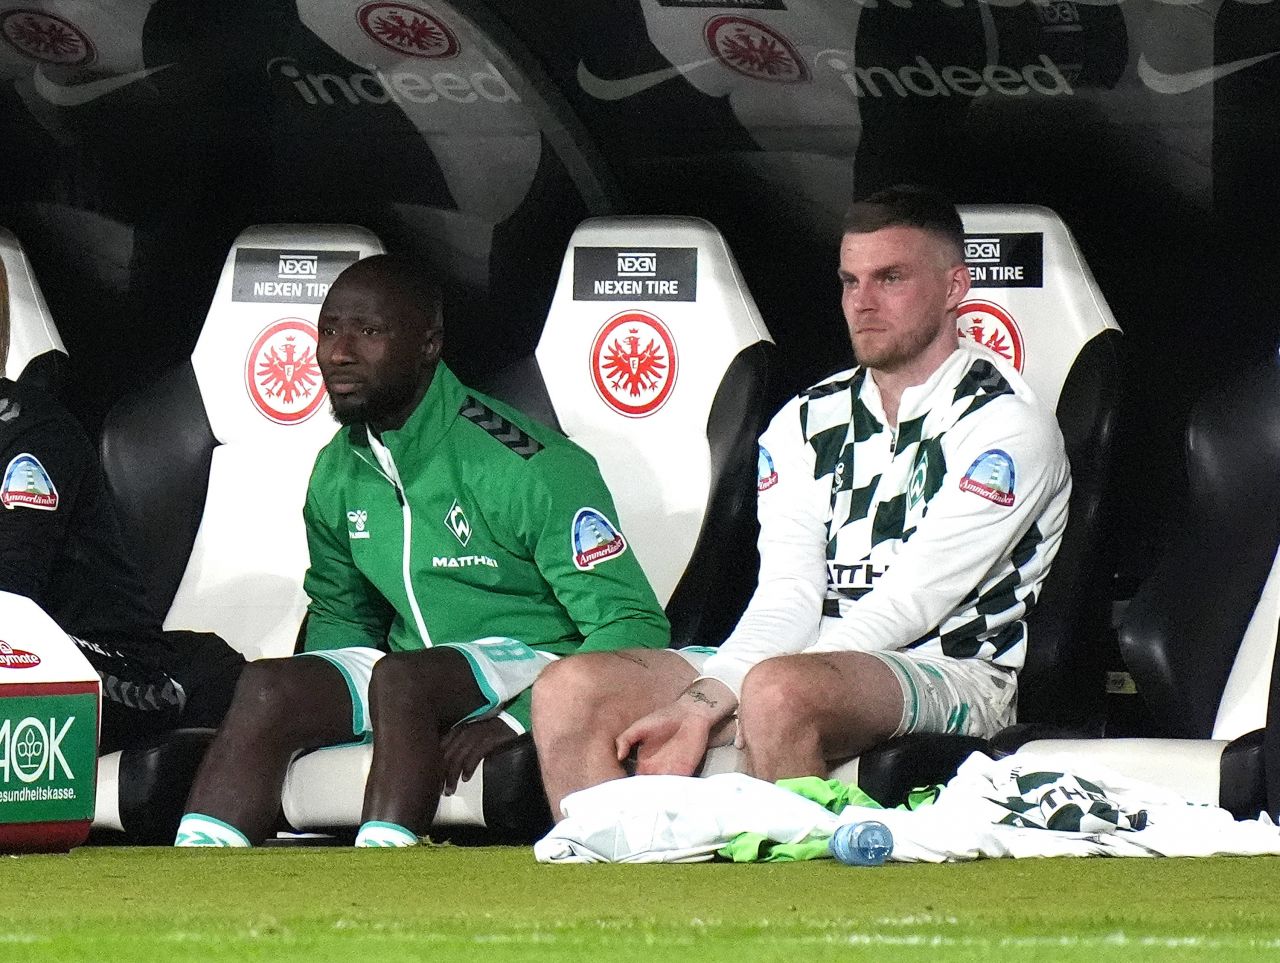 Starul lui Werder Bremen, sancționat drastic după umilința cu Leverkusen: "Acest lucru este inacceptabil!"_1